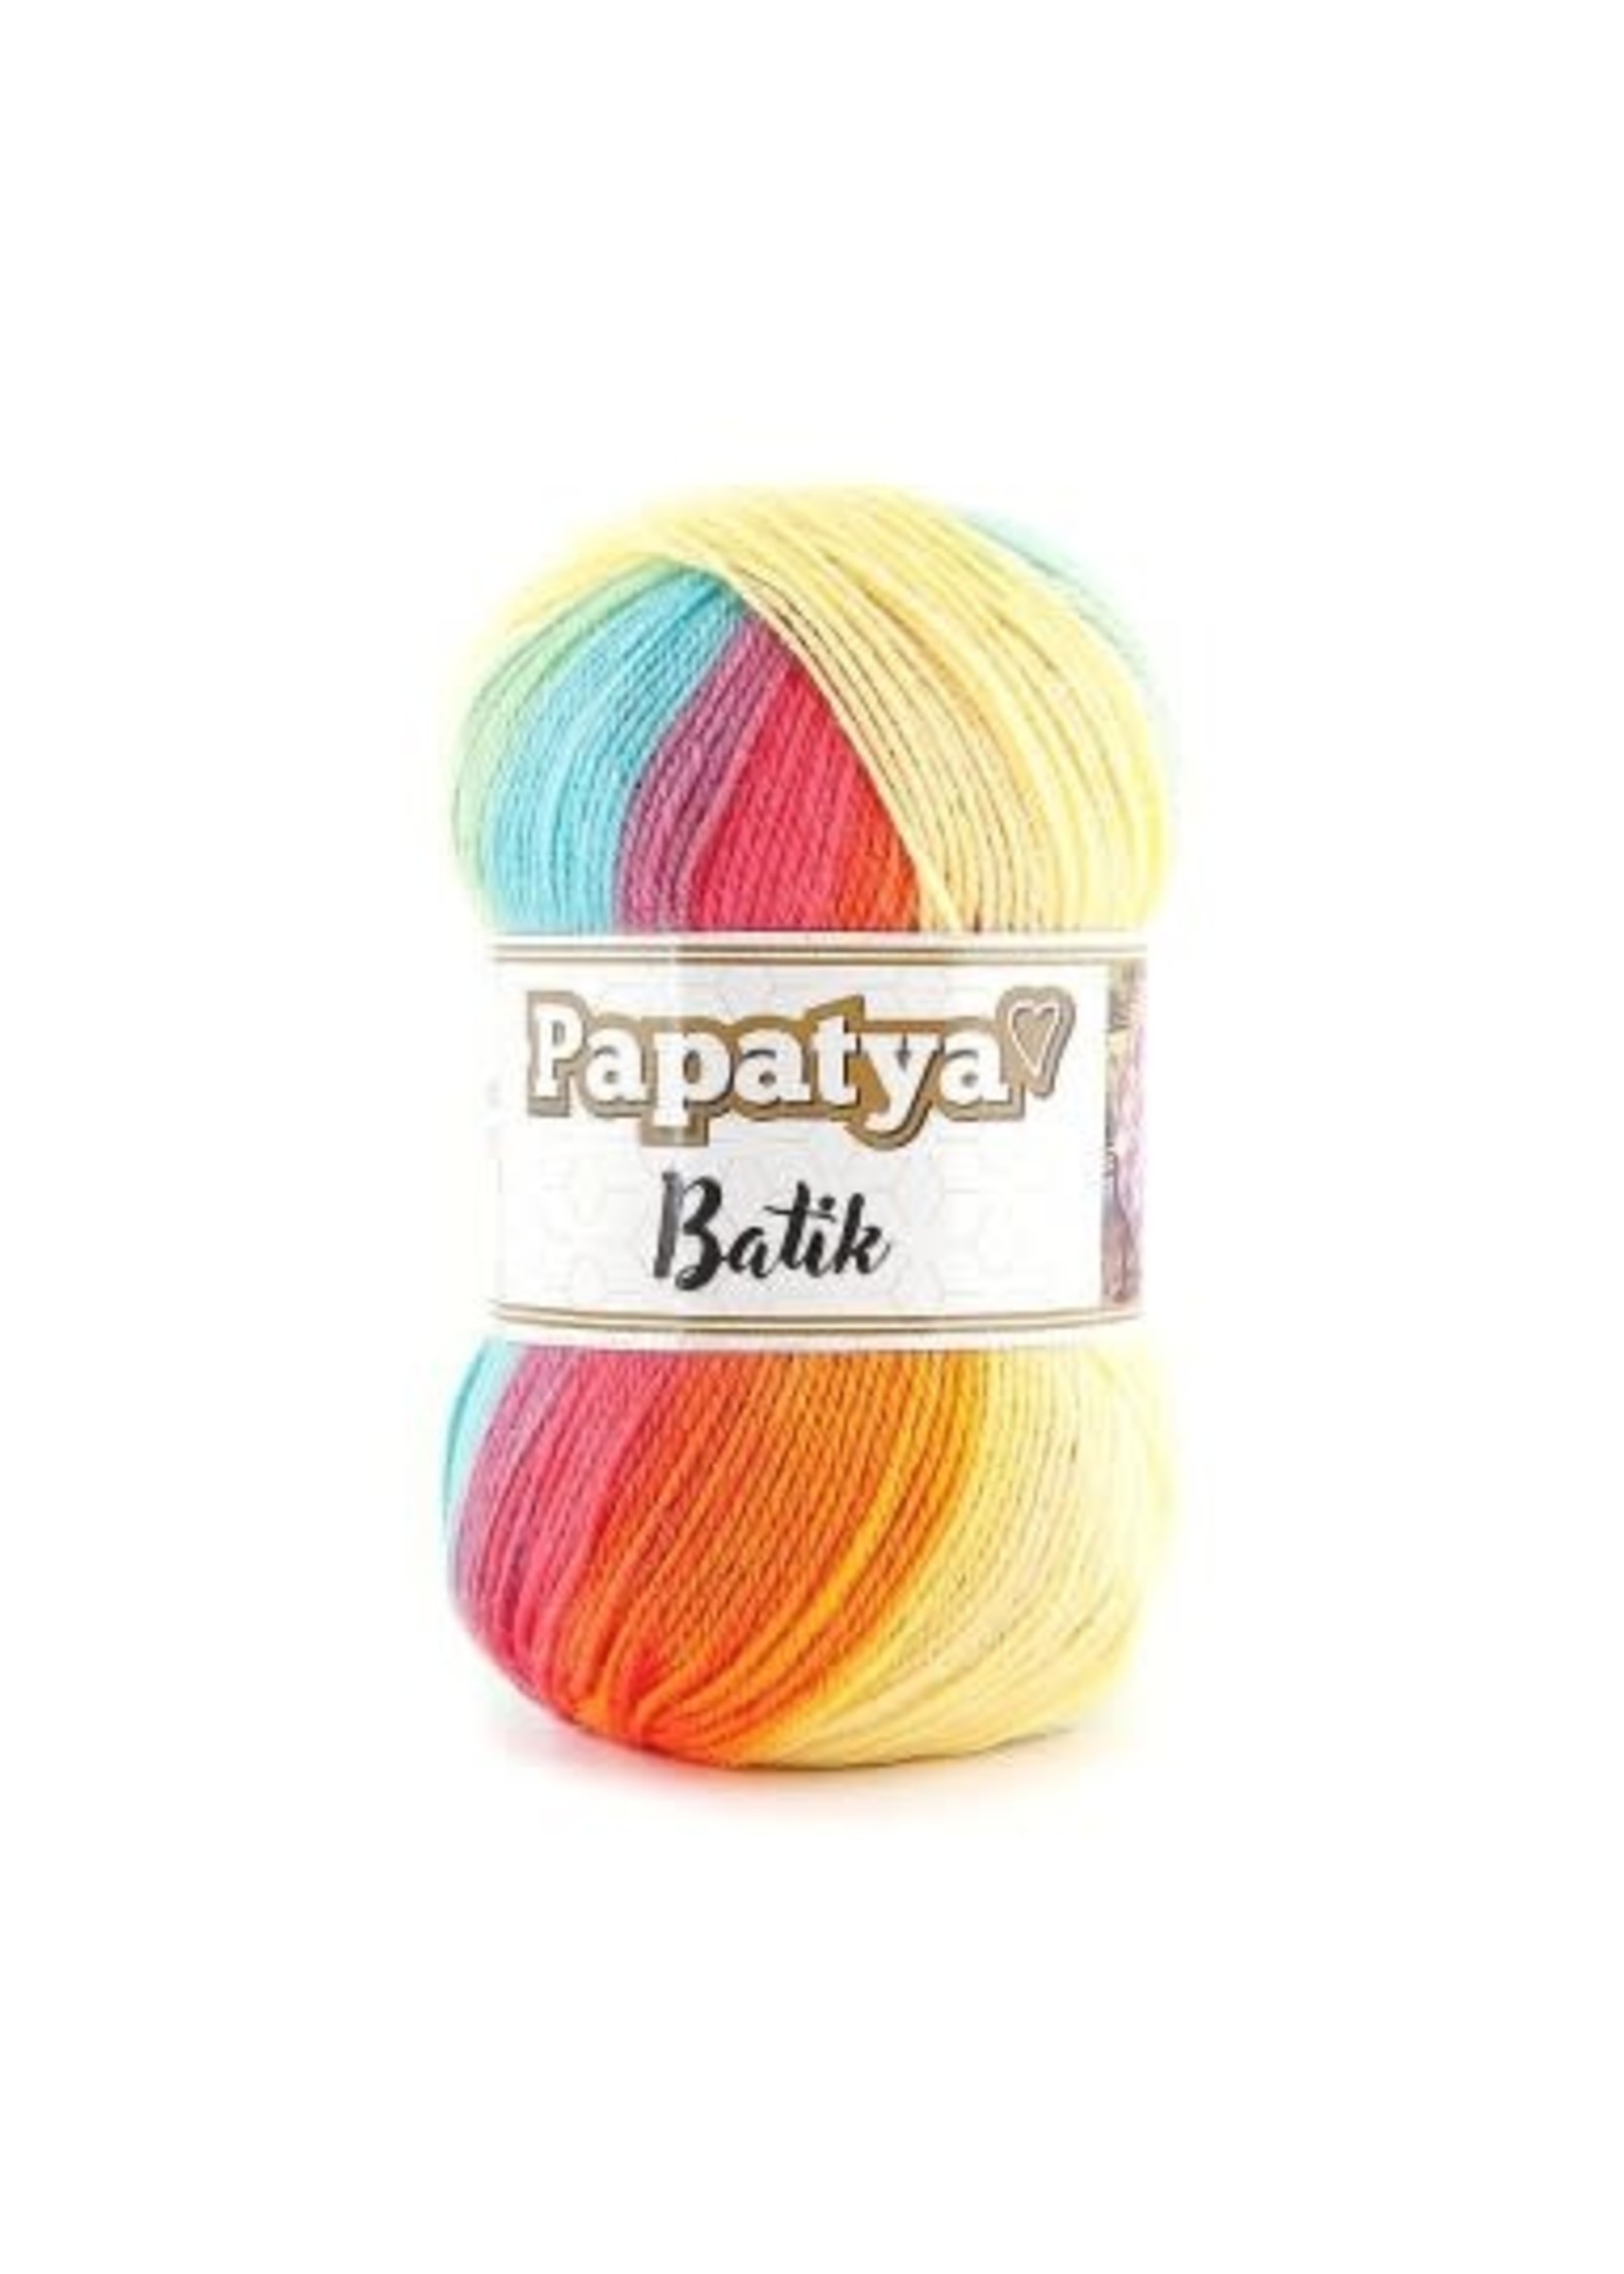 Papatya Papatya Batik - 12 Vrolijk